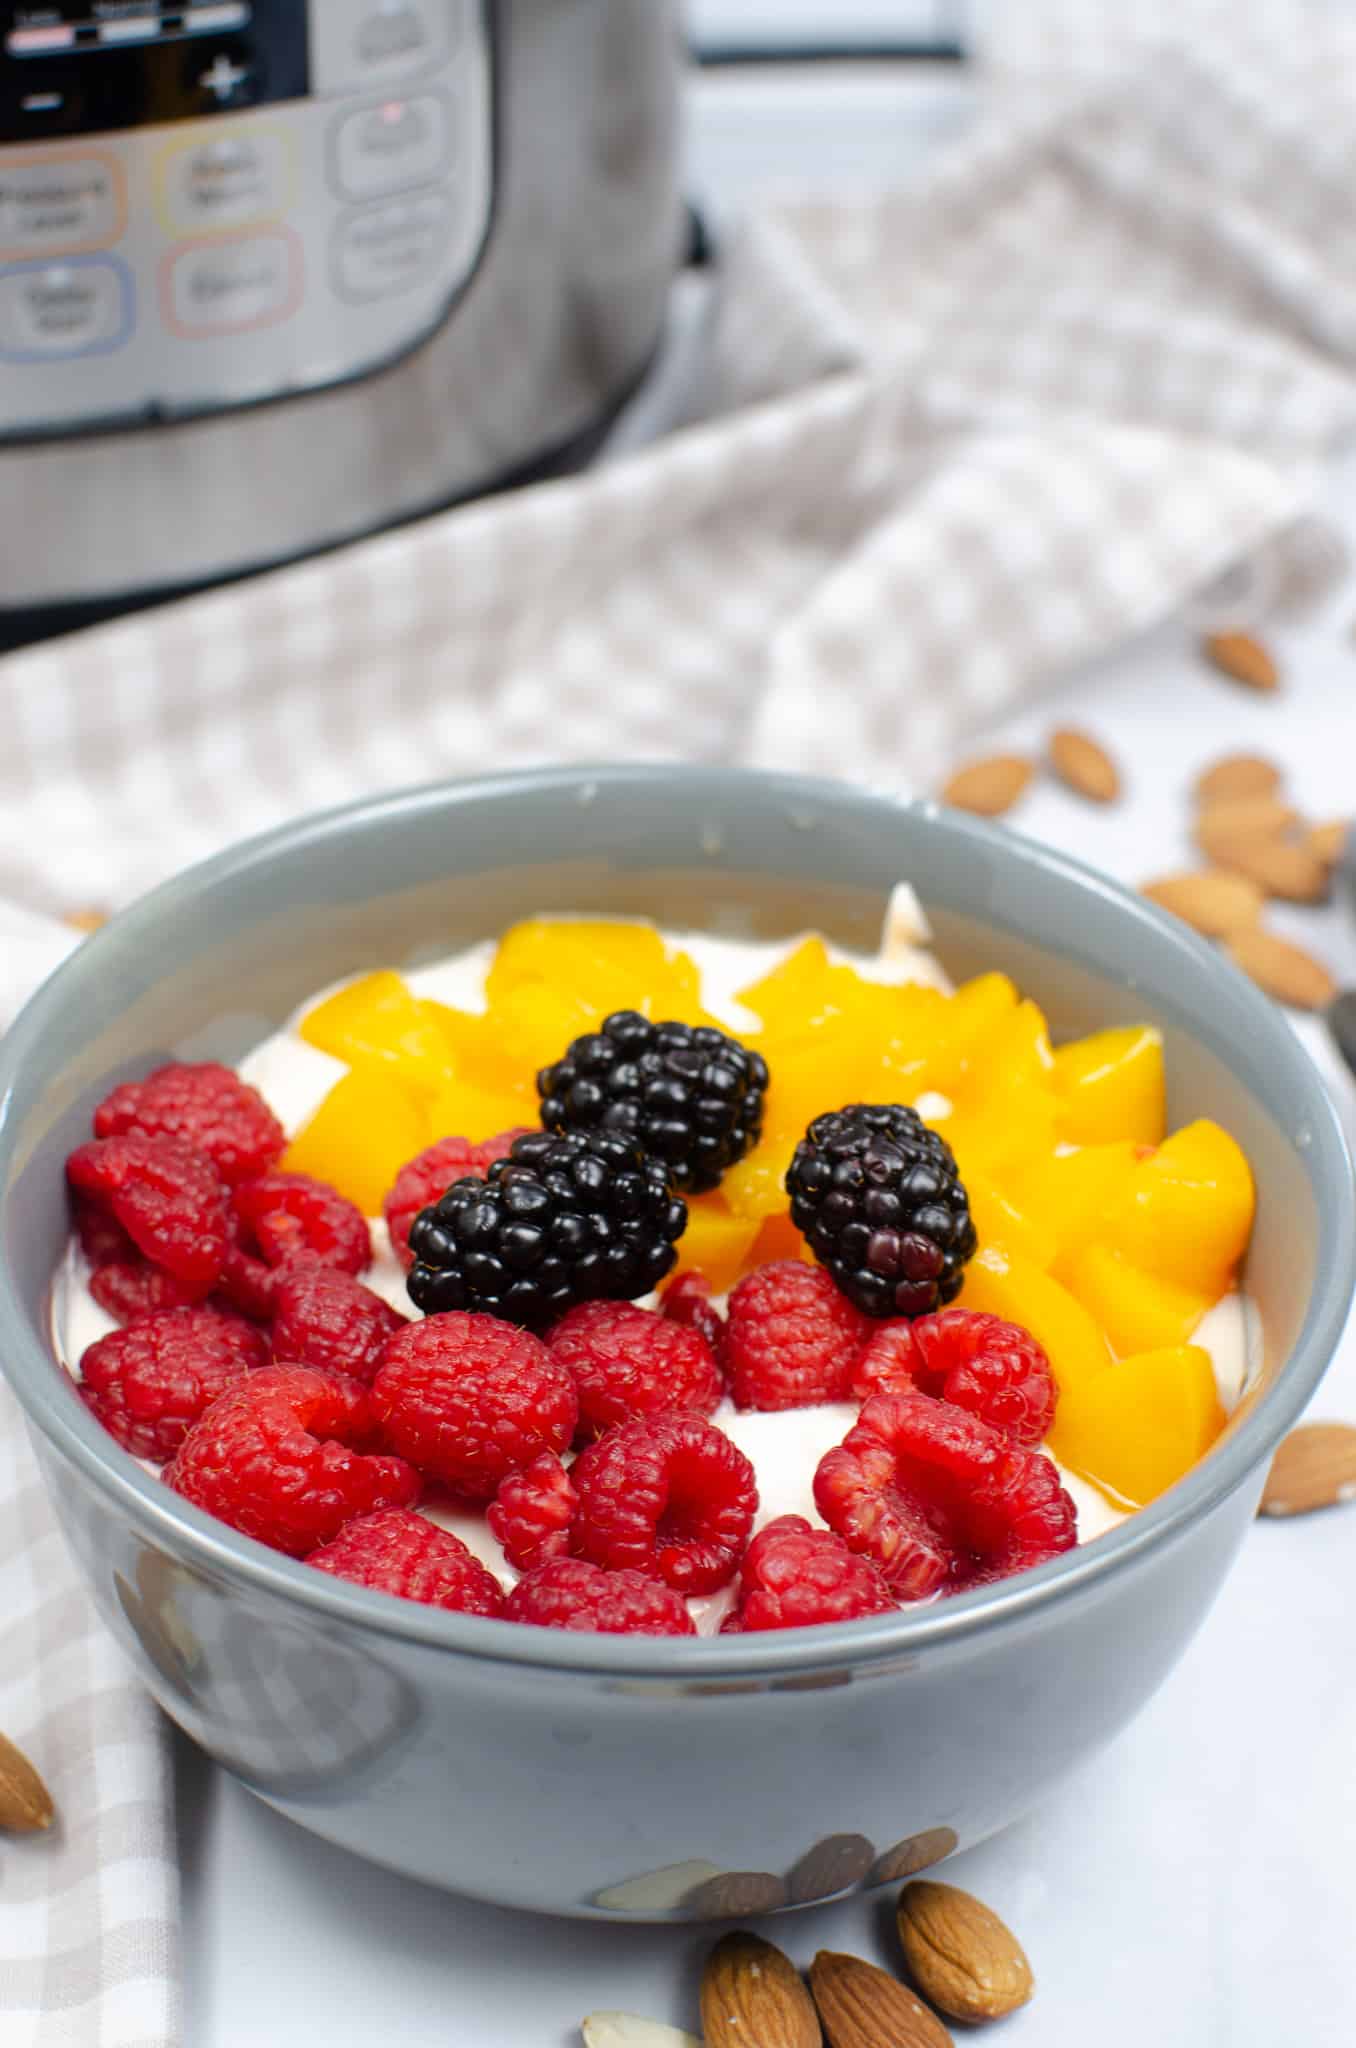 almond milk yogurt in bowl with berries